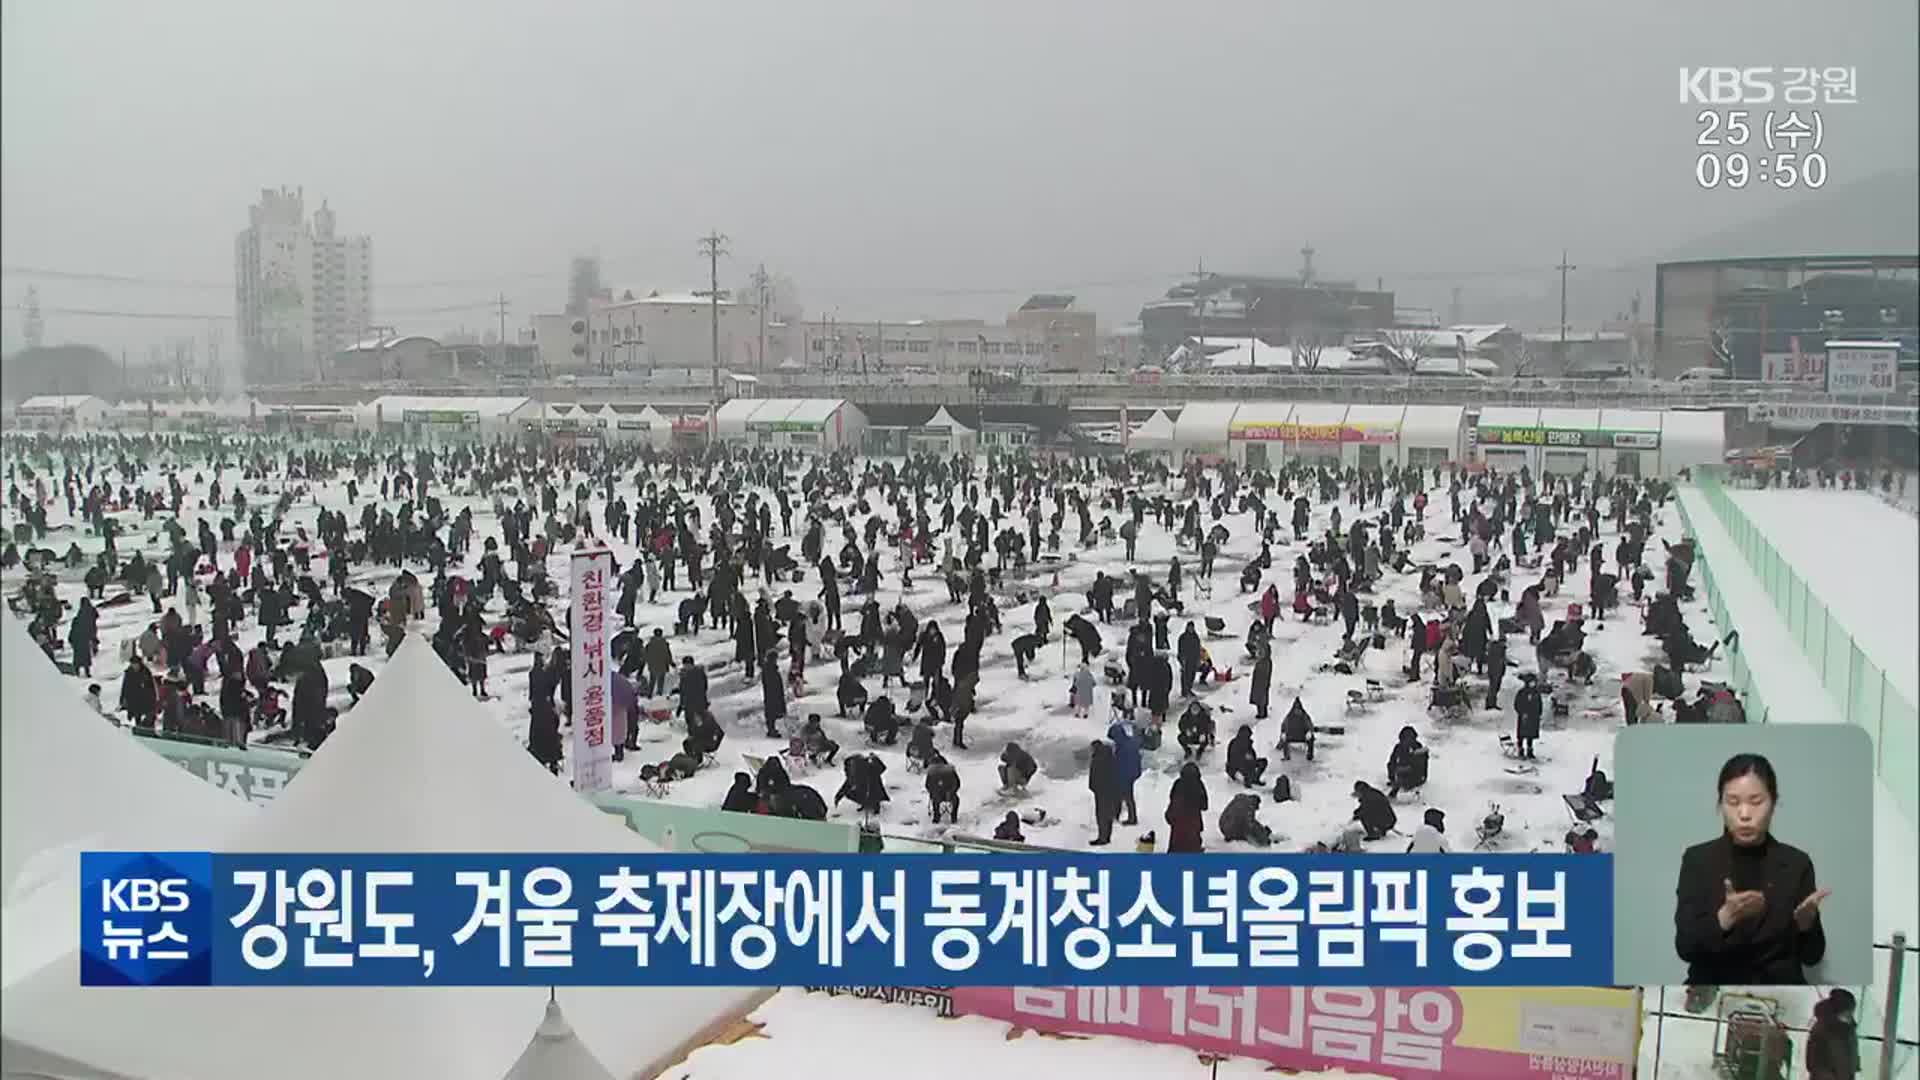 강원도, 겨울 축제장에서 동계청소년올림픽 홍보